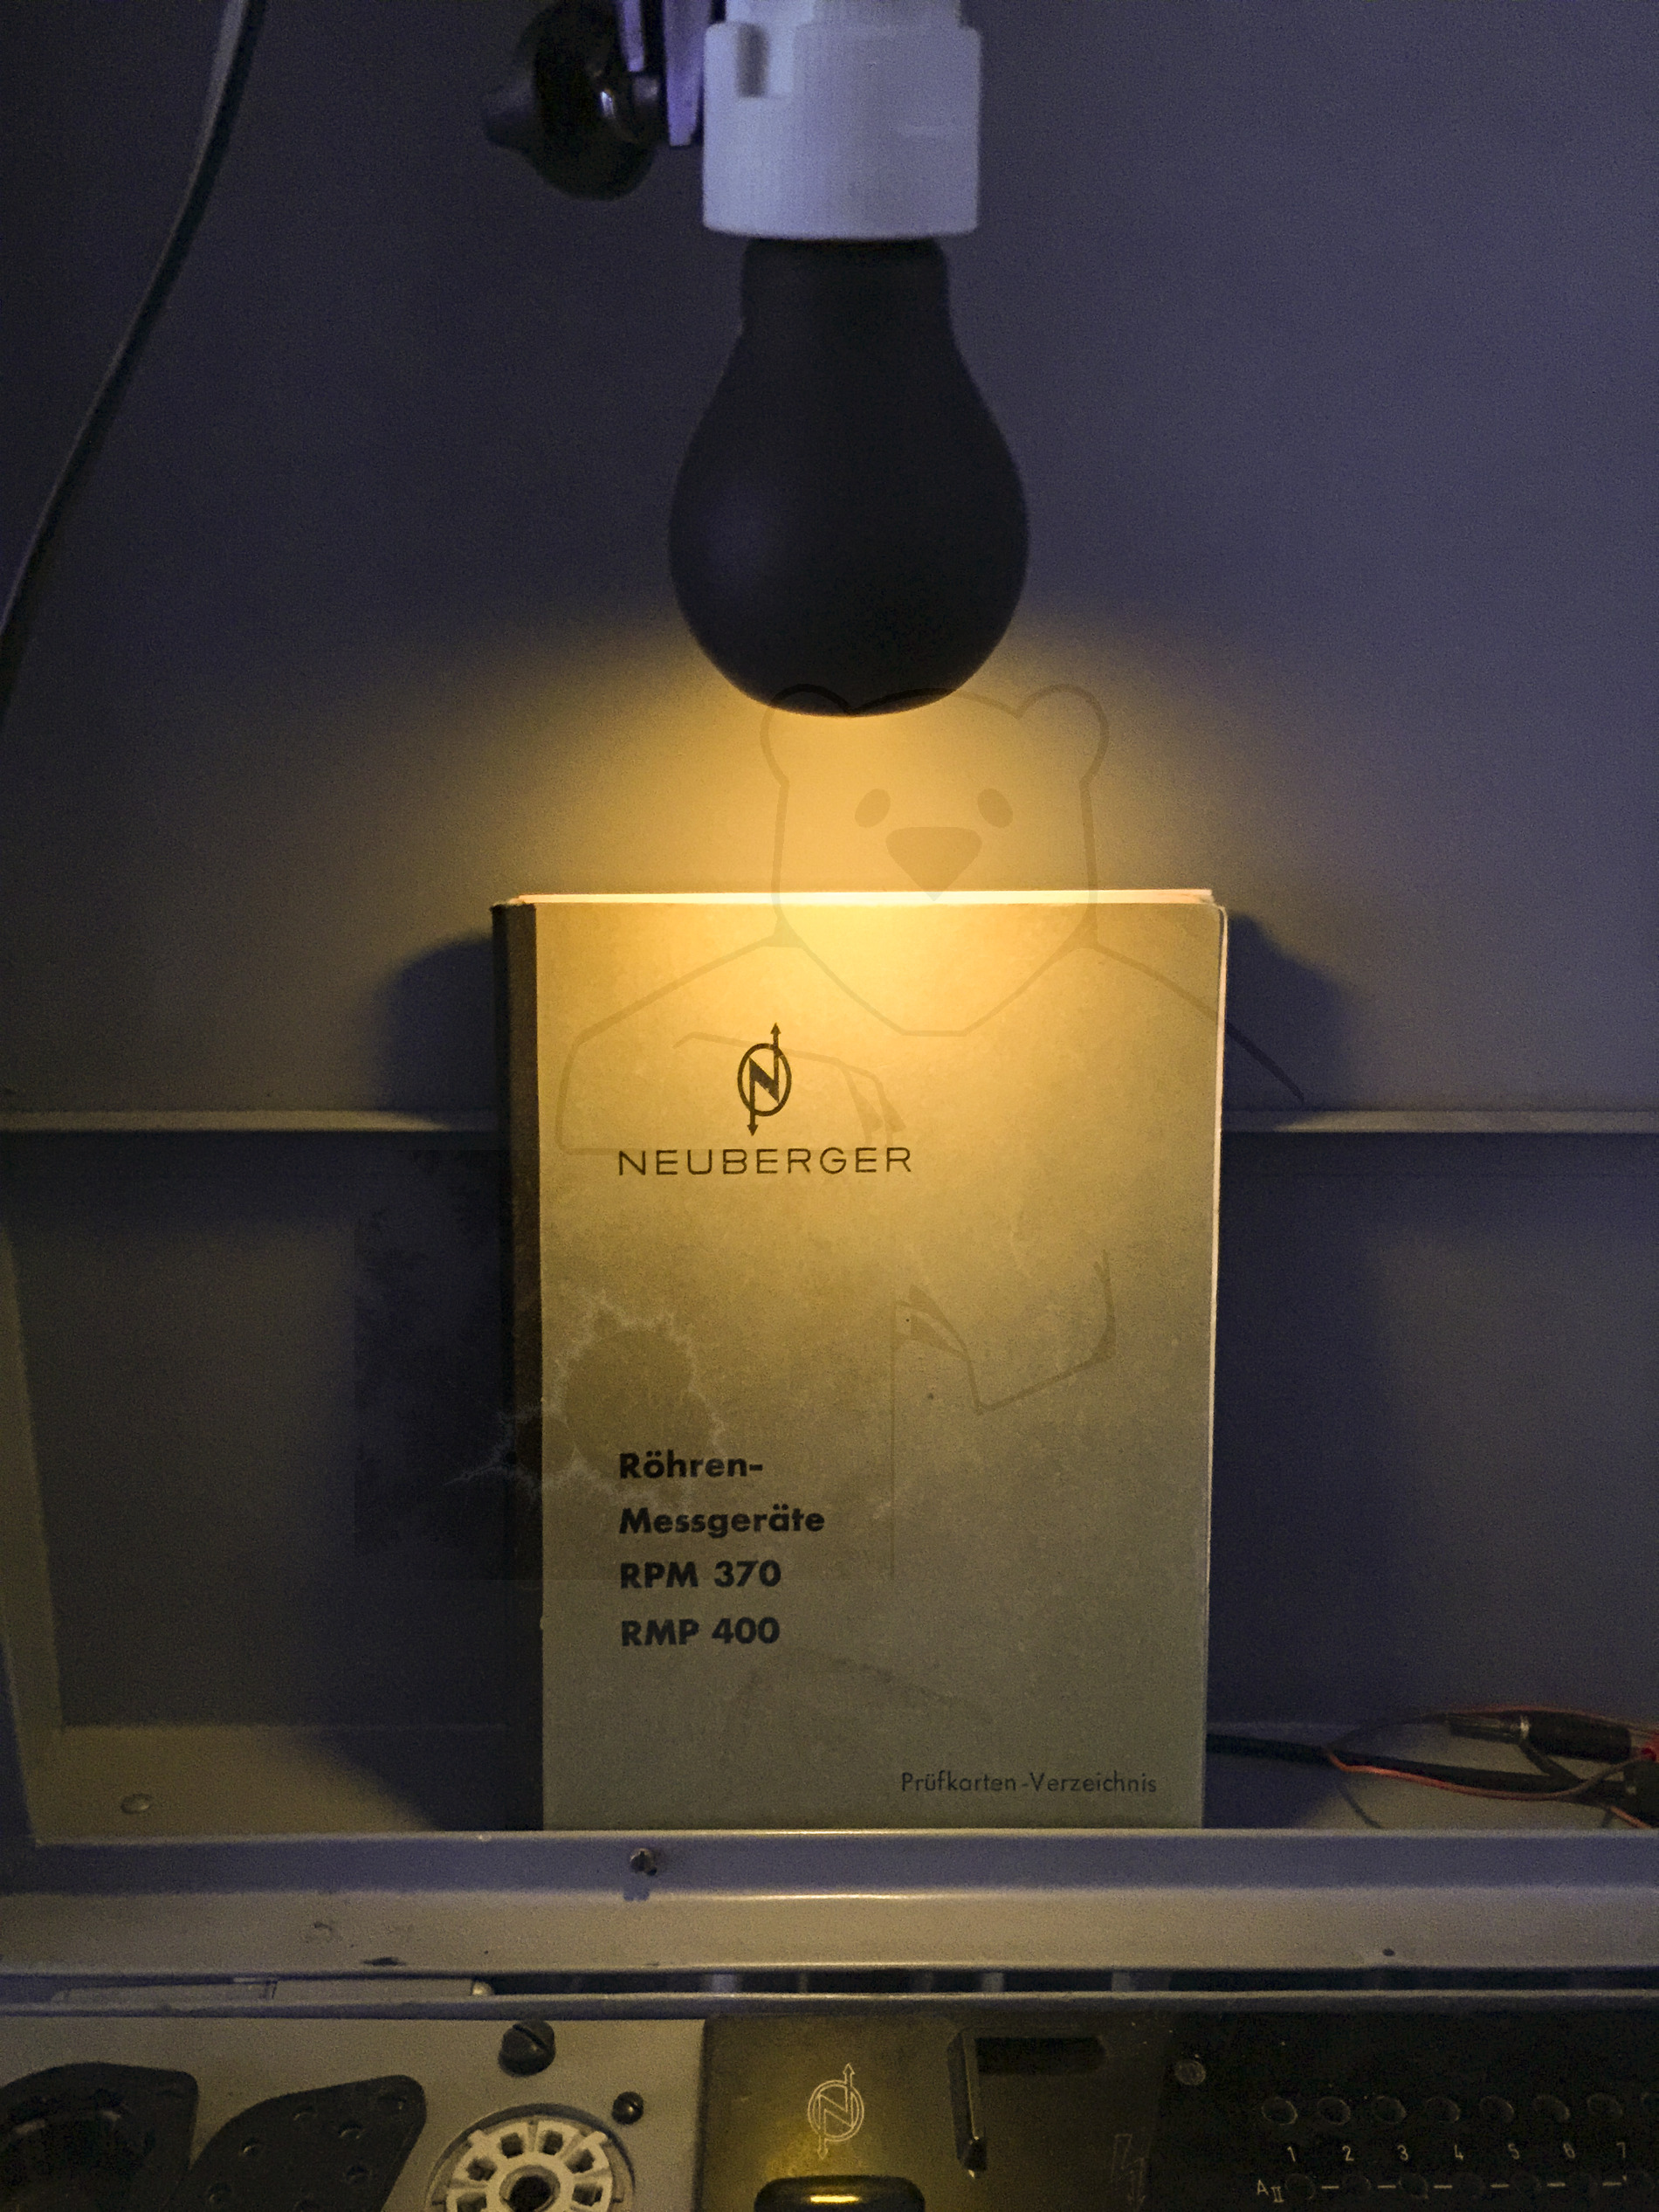 Luftschutzlampe von Osram, ca. 1940 - Die Luftschutzlampe im Betrieb. Die Lampe gibt ein sehr gelbes, diffuses Licht ab